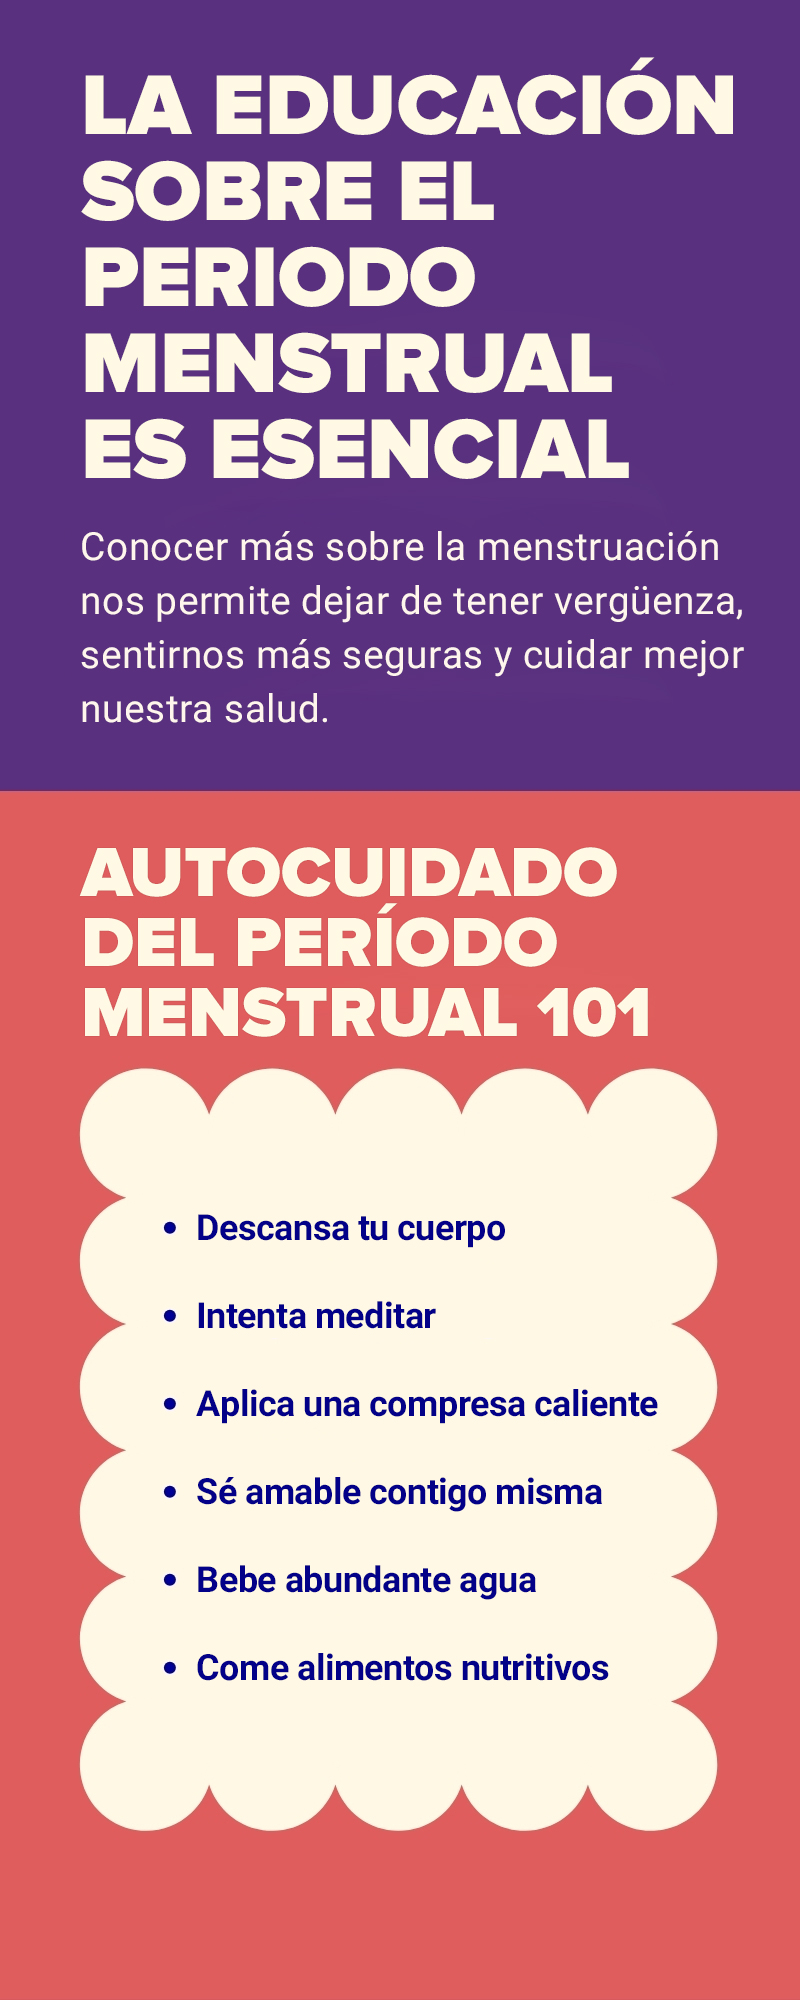 Infografía sobre el período menstrual